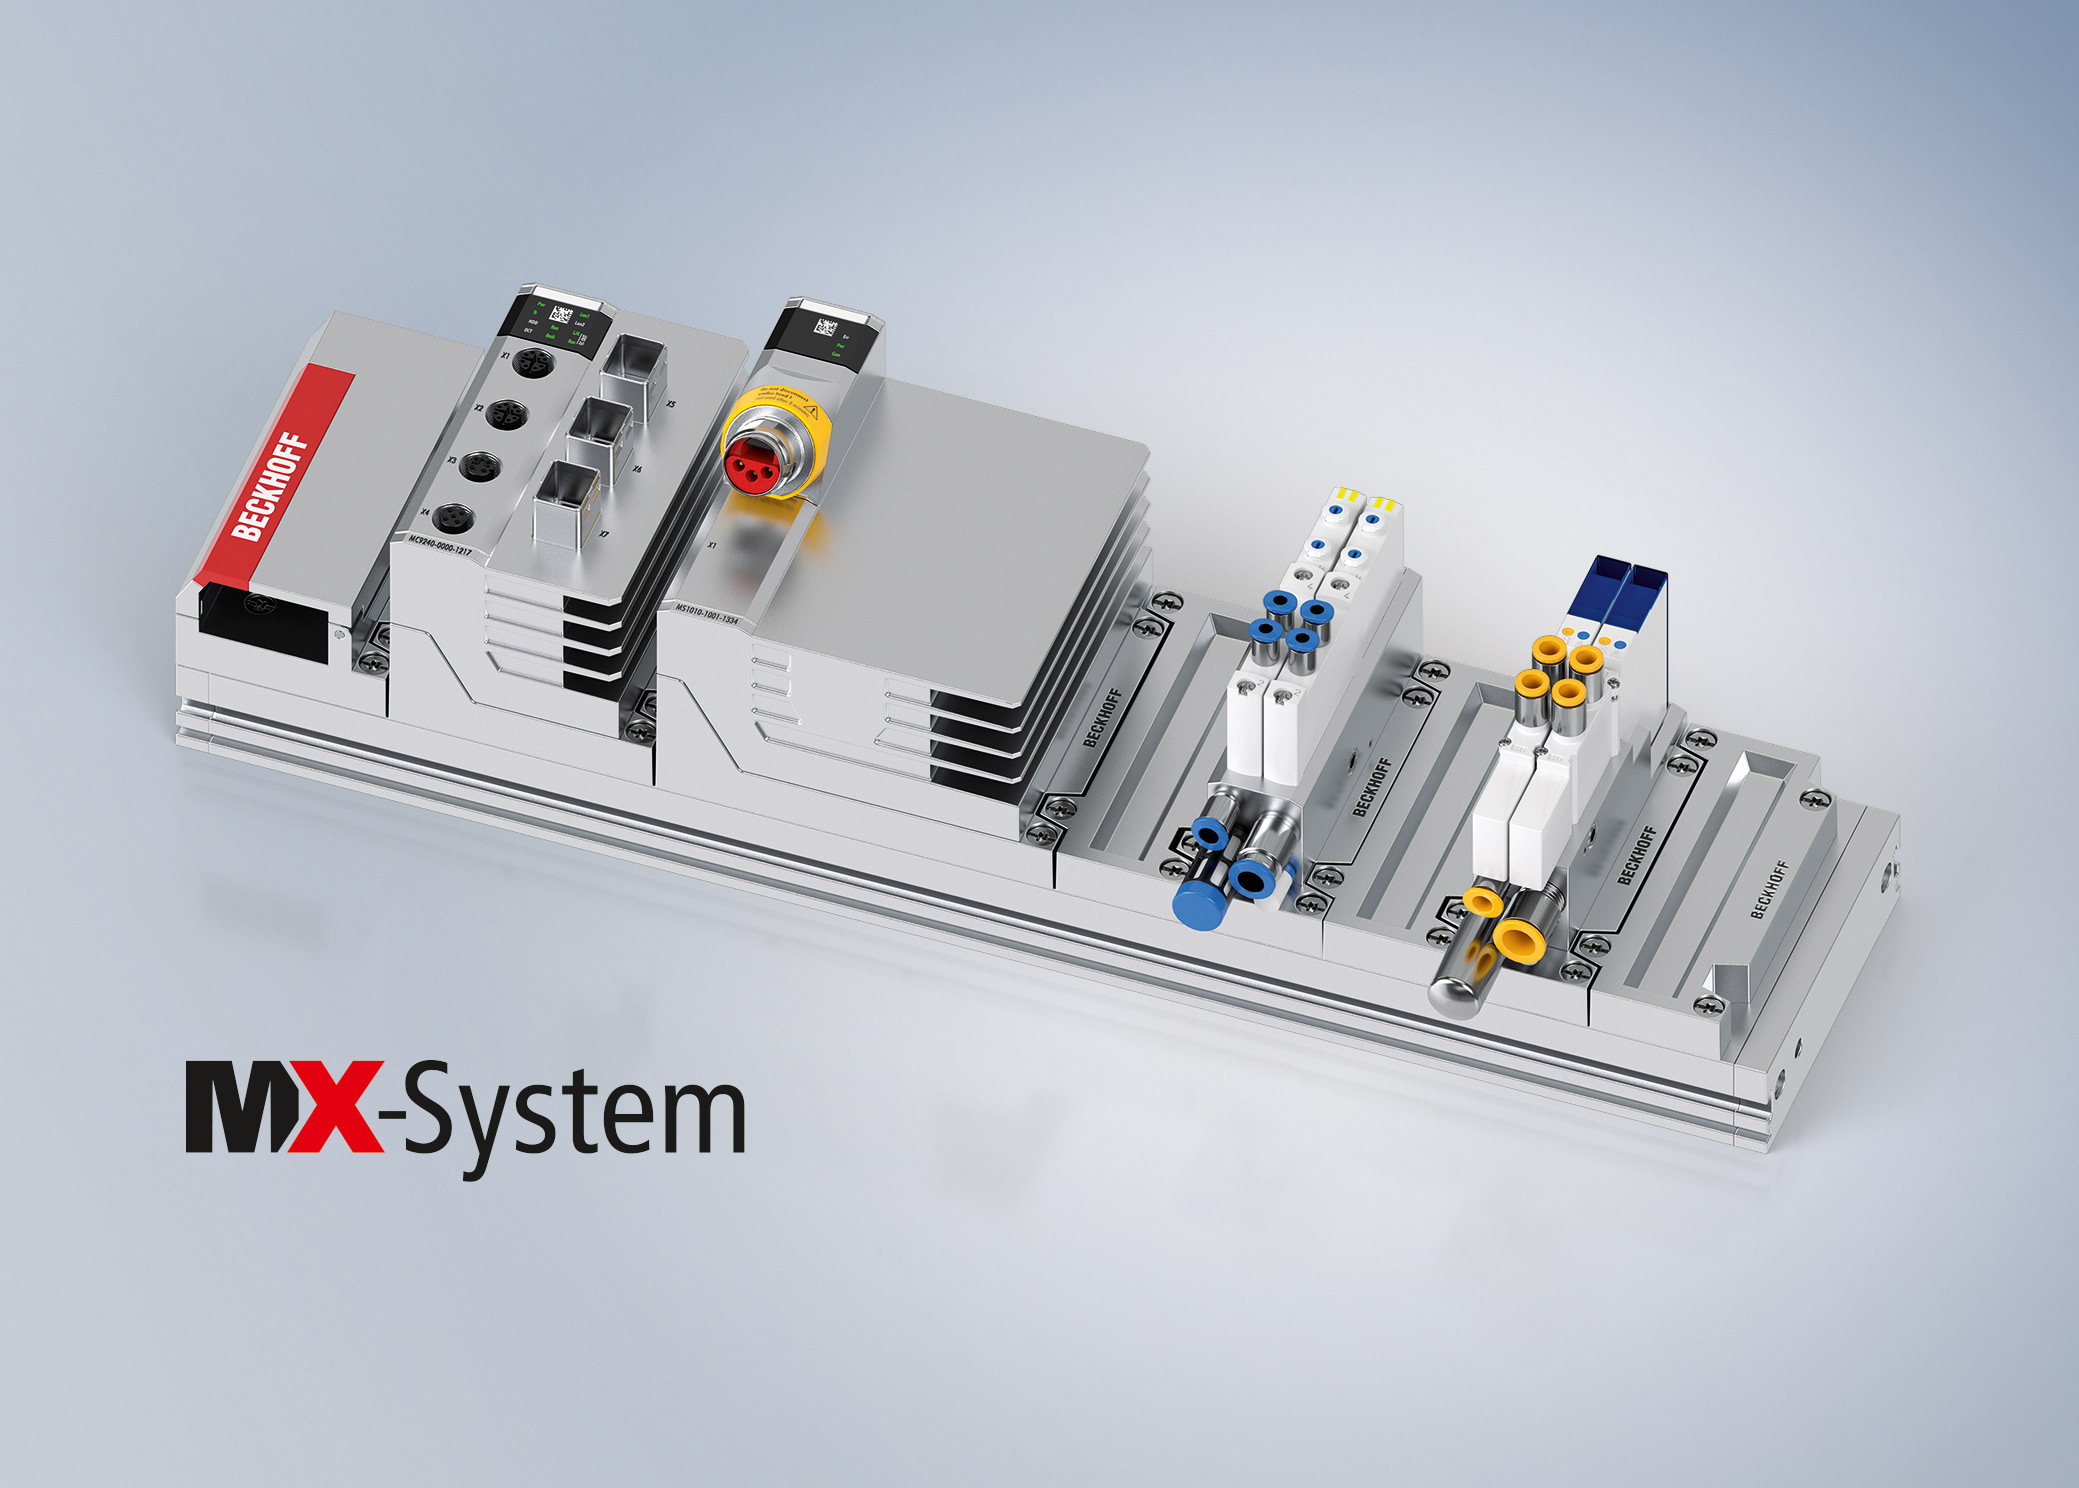 MX-System integriert Pneumatik-Ventile